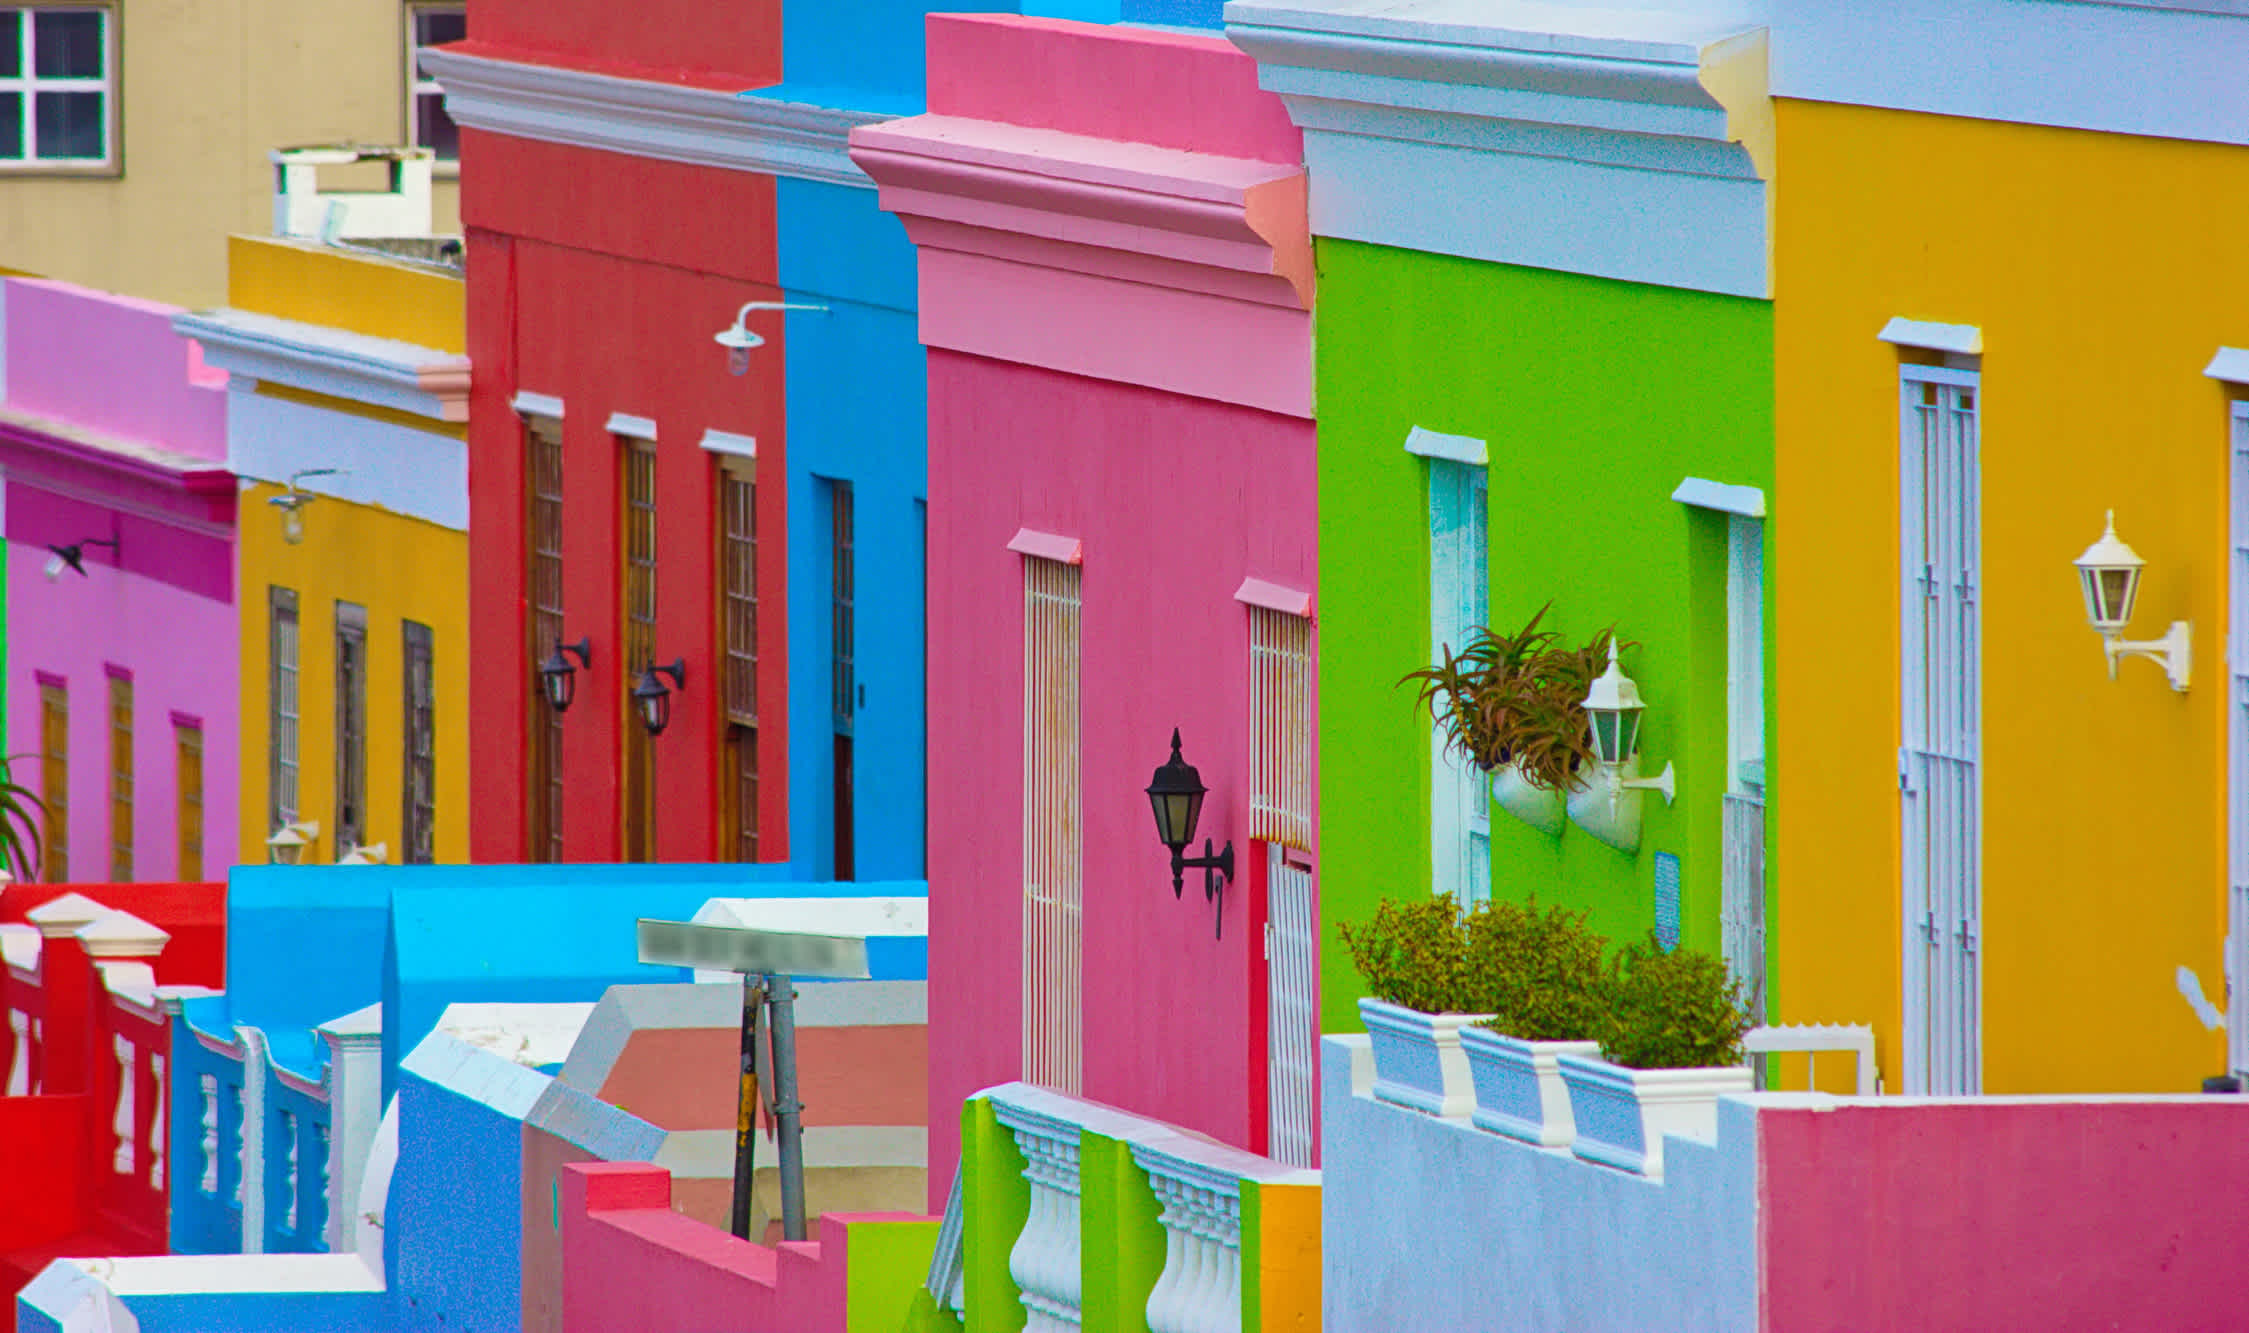 Vue du quartier coloré de Bo Kaap au Cap, Afrique du Sud.